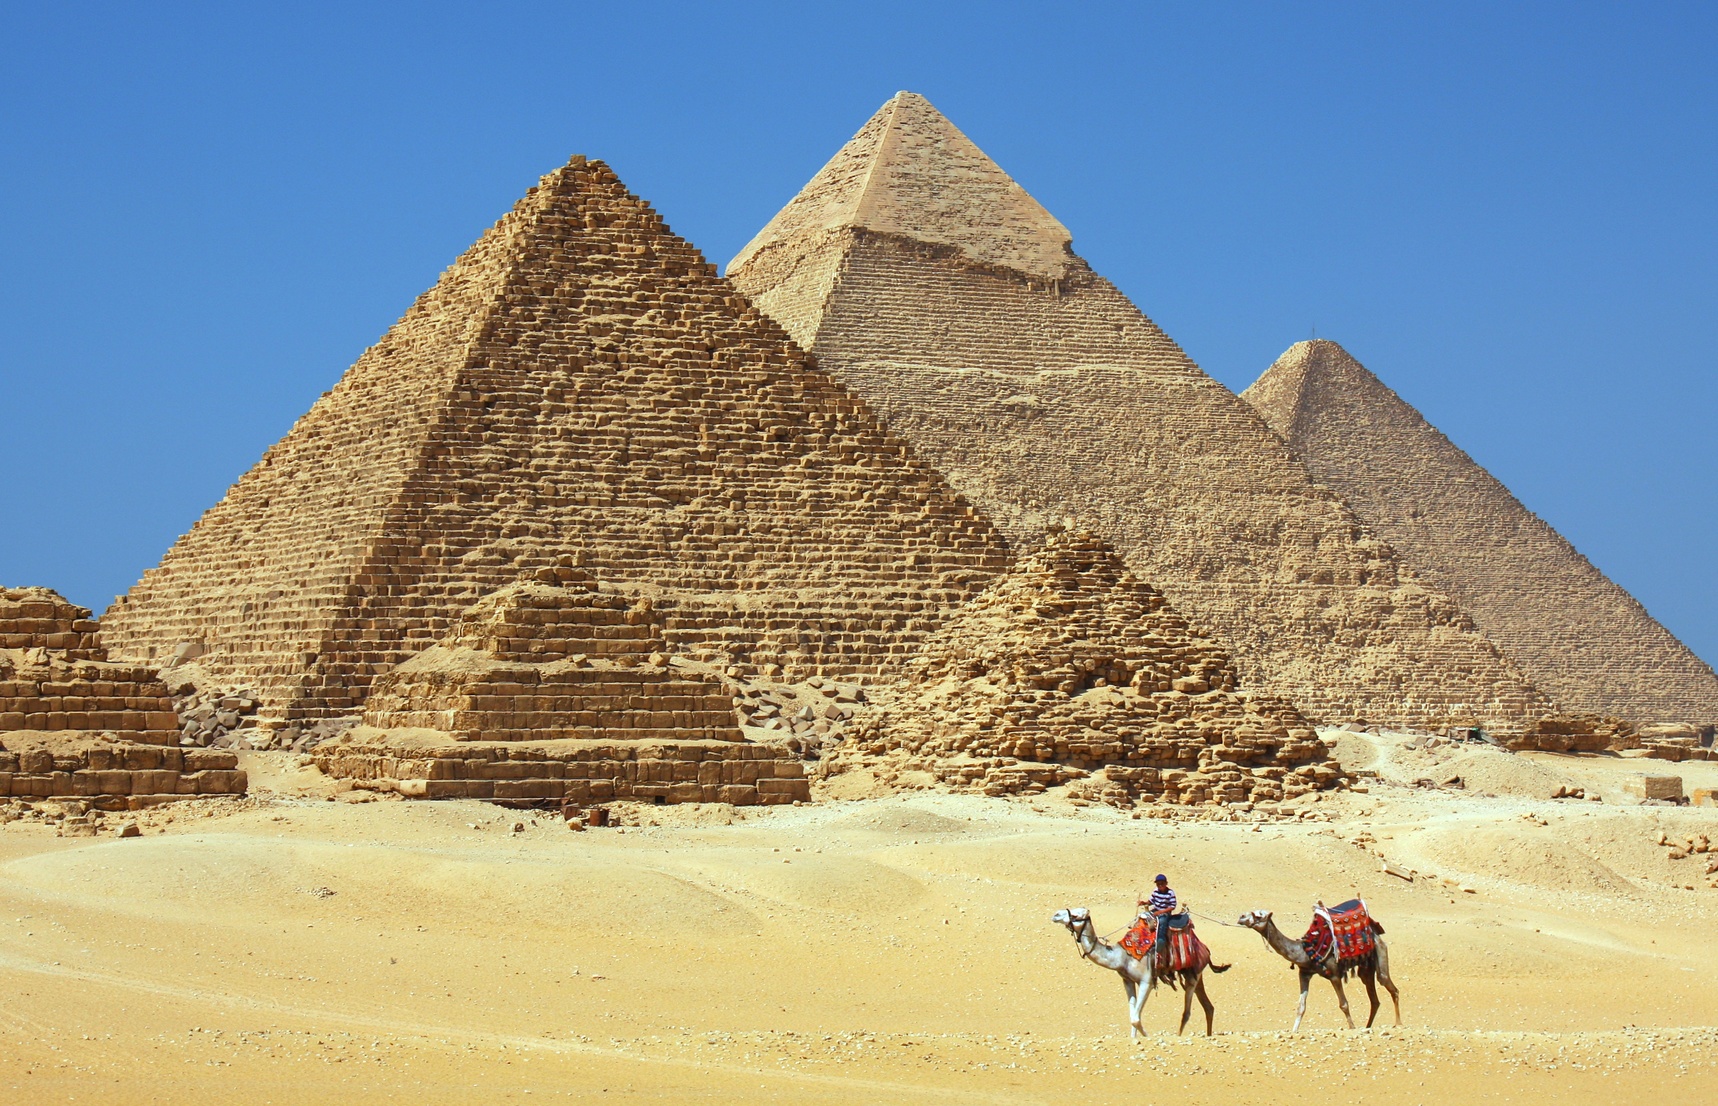  Egipt Zwiedzanie I Wypoczynek Oferty Na Wakacje 2w1 Fly pl